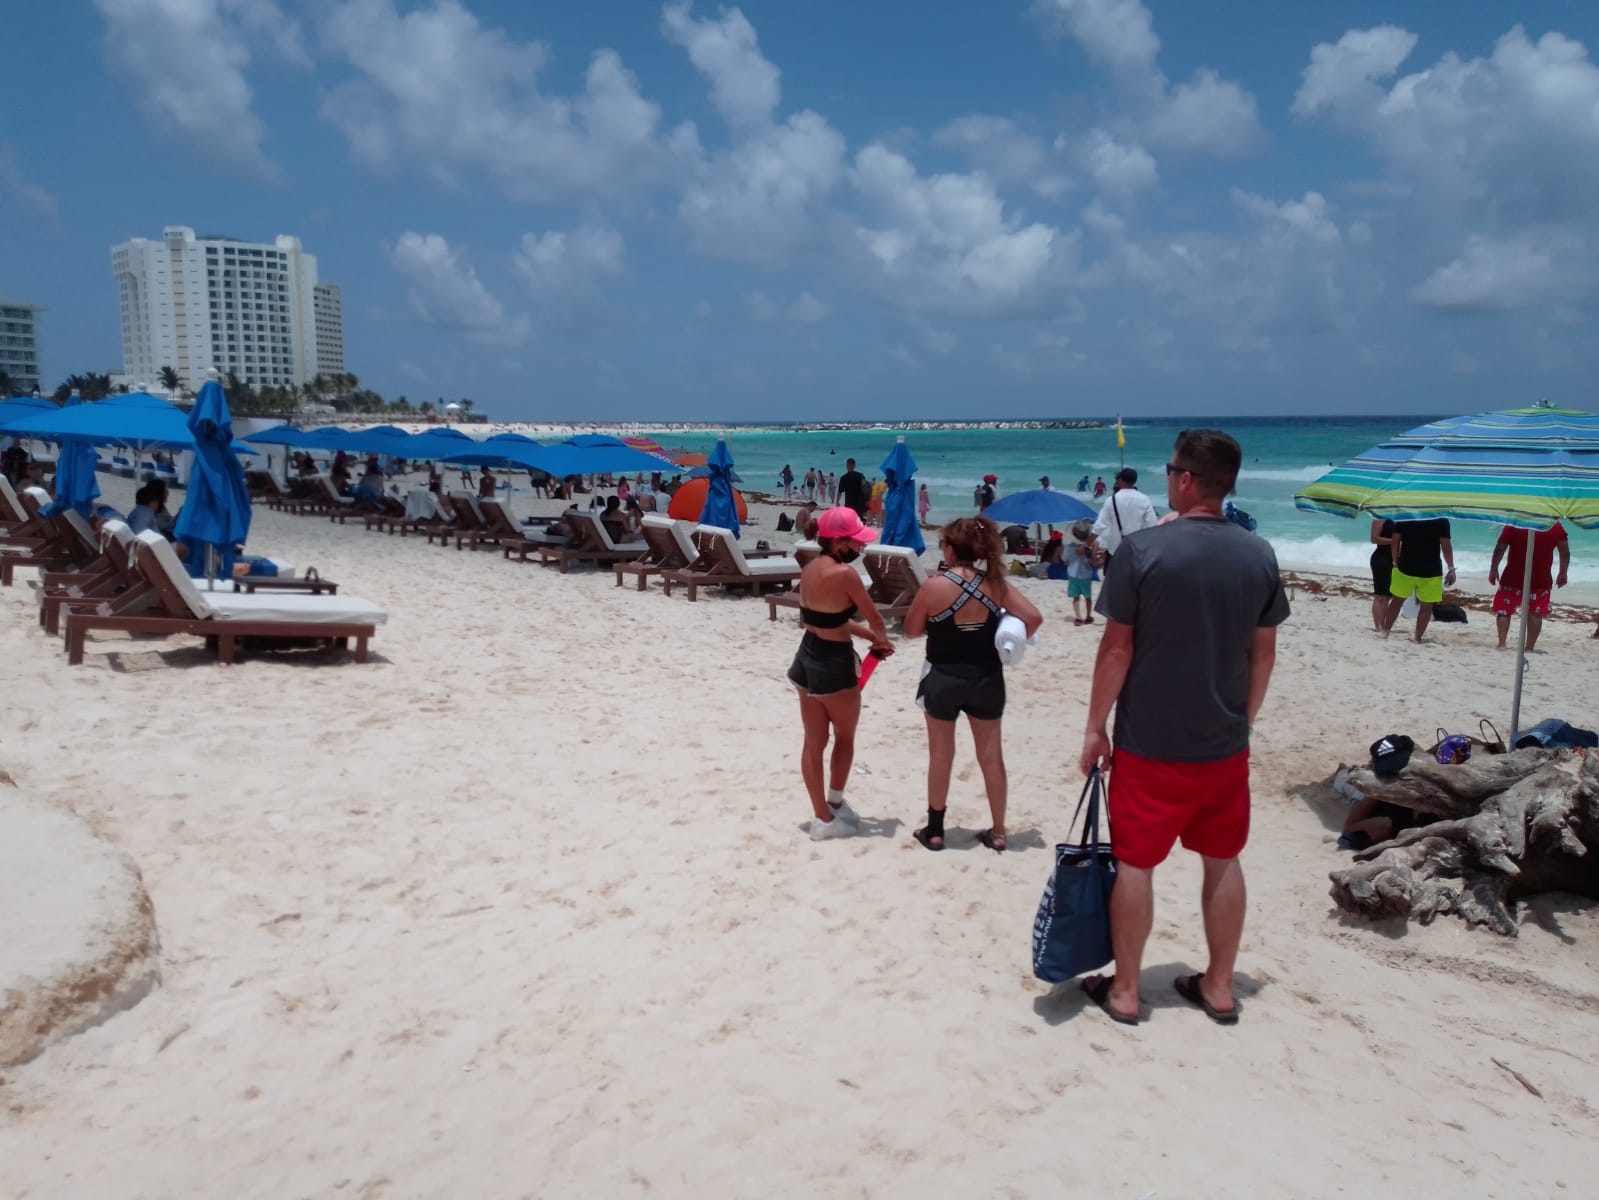 Así se ve el sargazo en Playa Fórum, en la Zona Hotelera de Cancún: EN VIVO